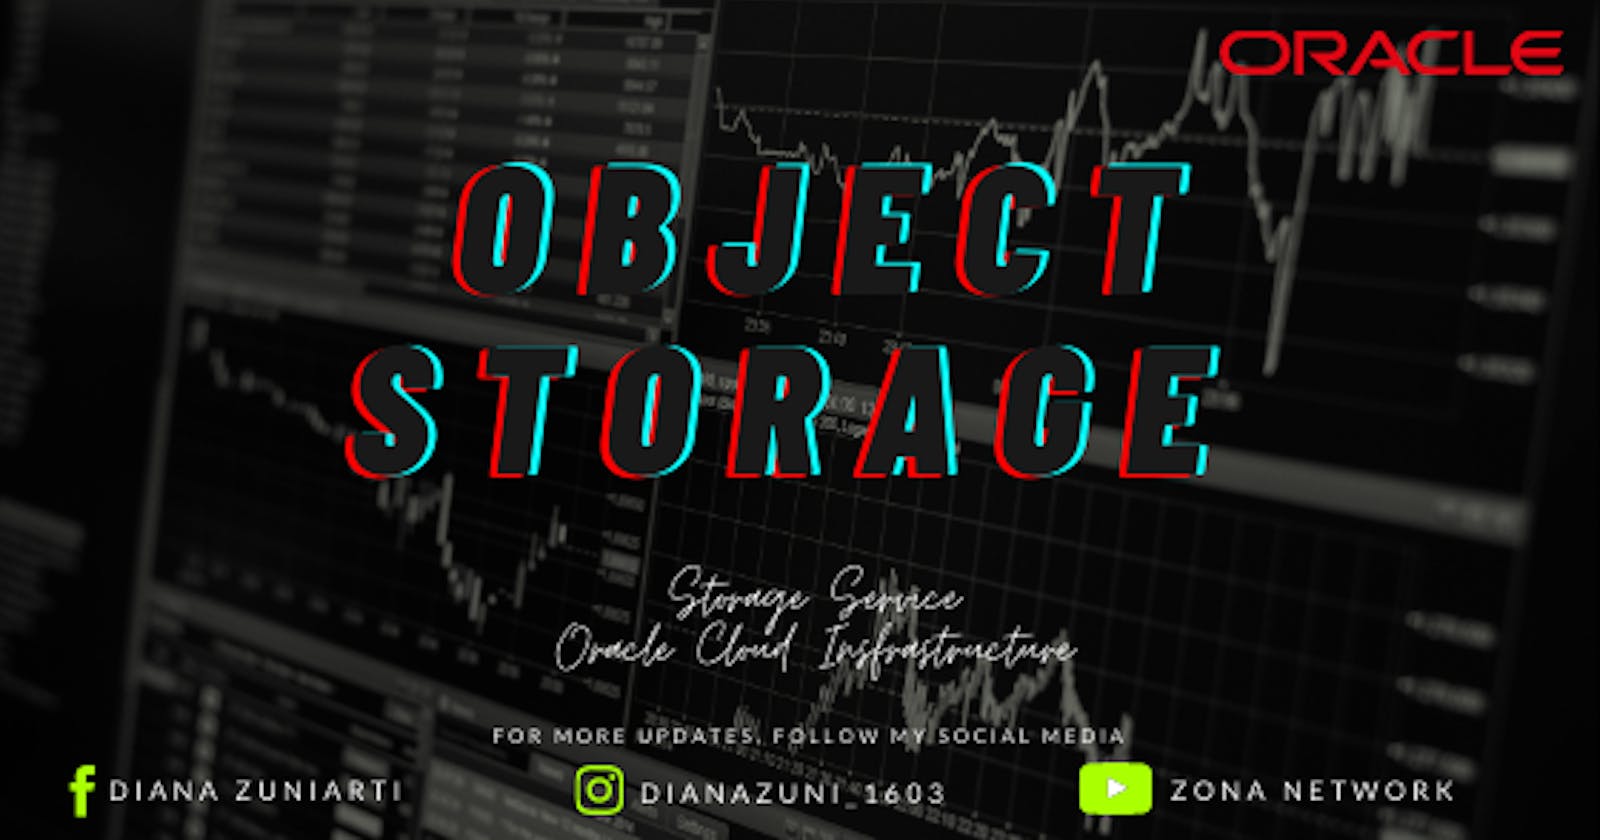 Object storage in OCI